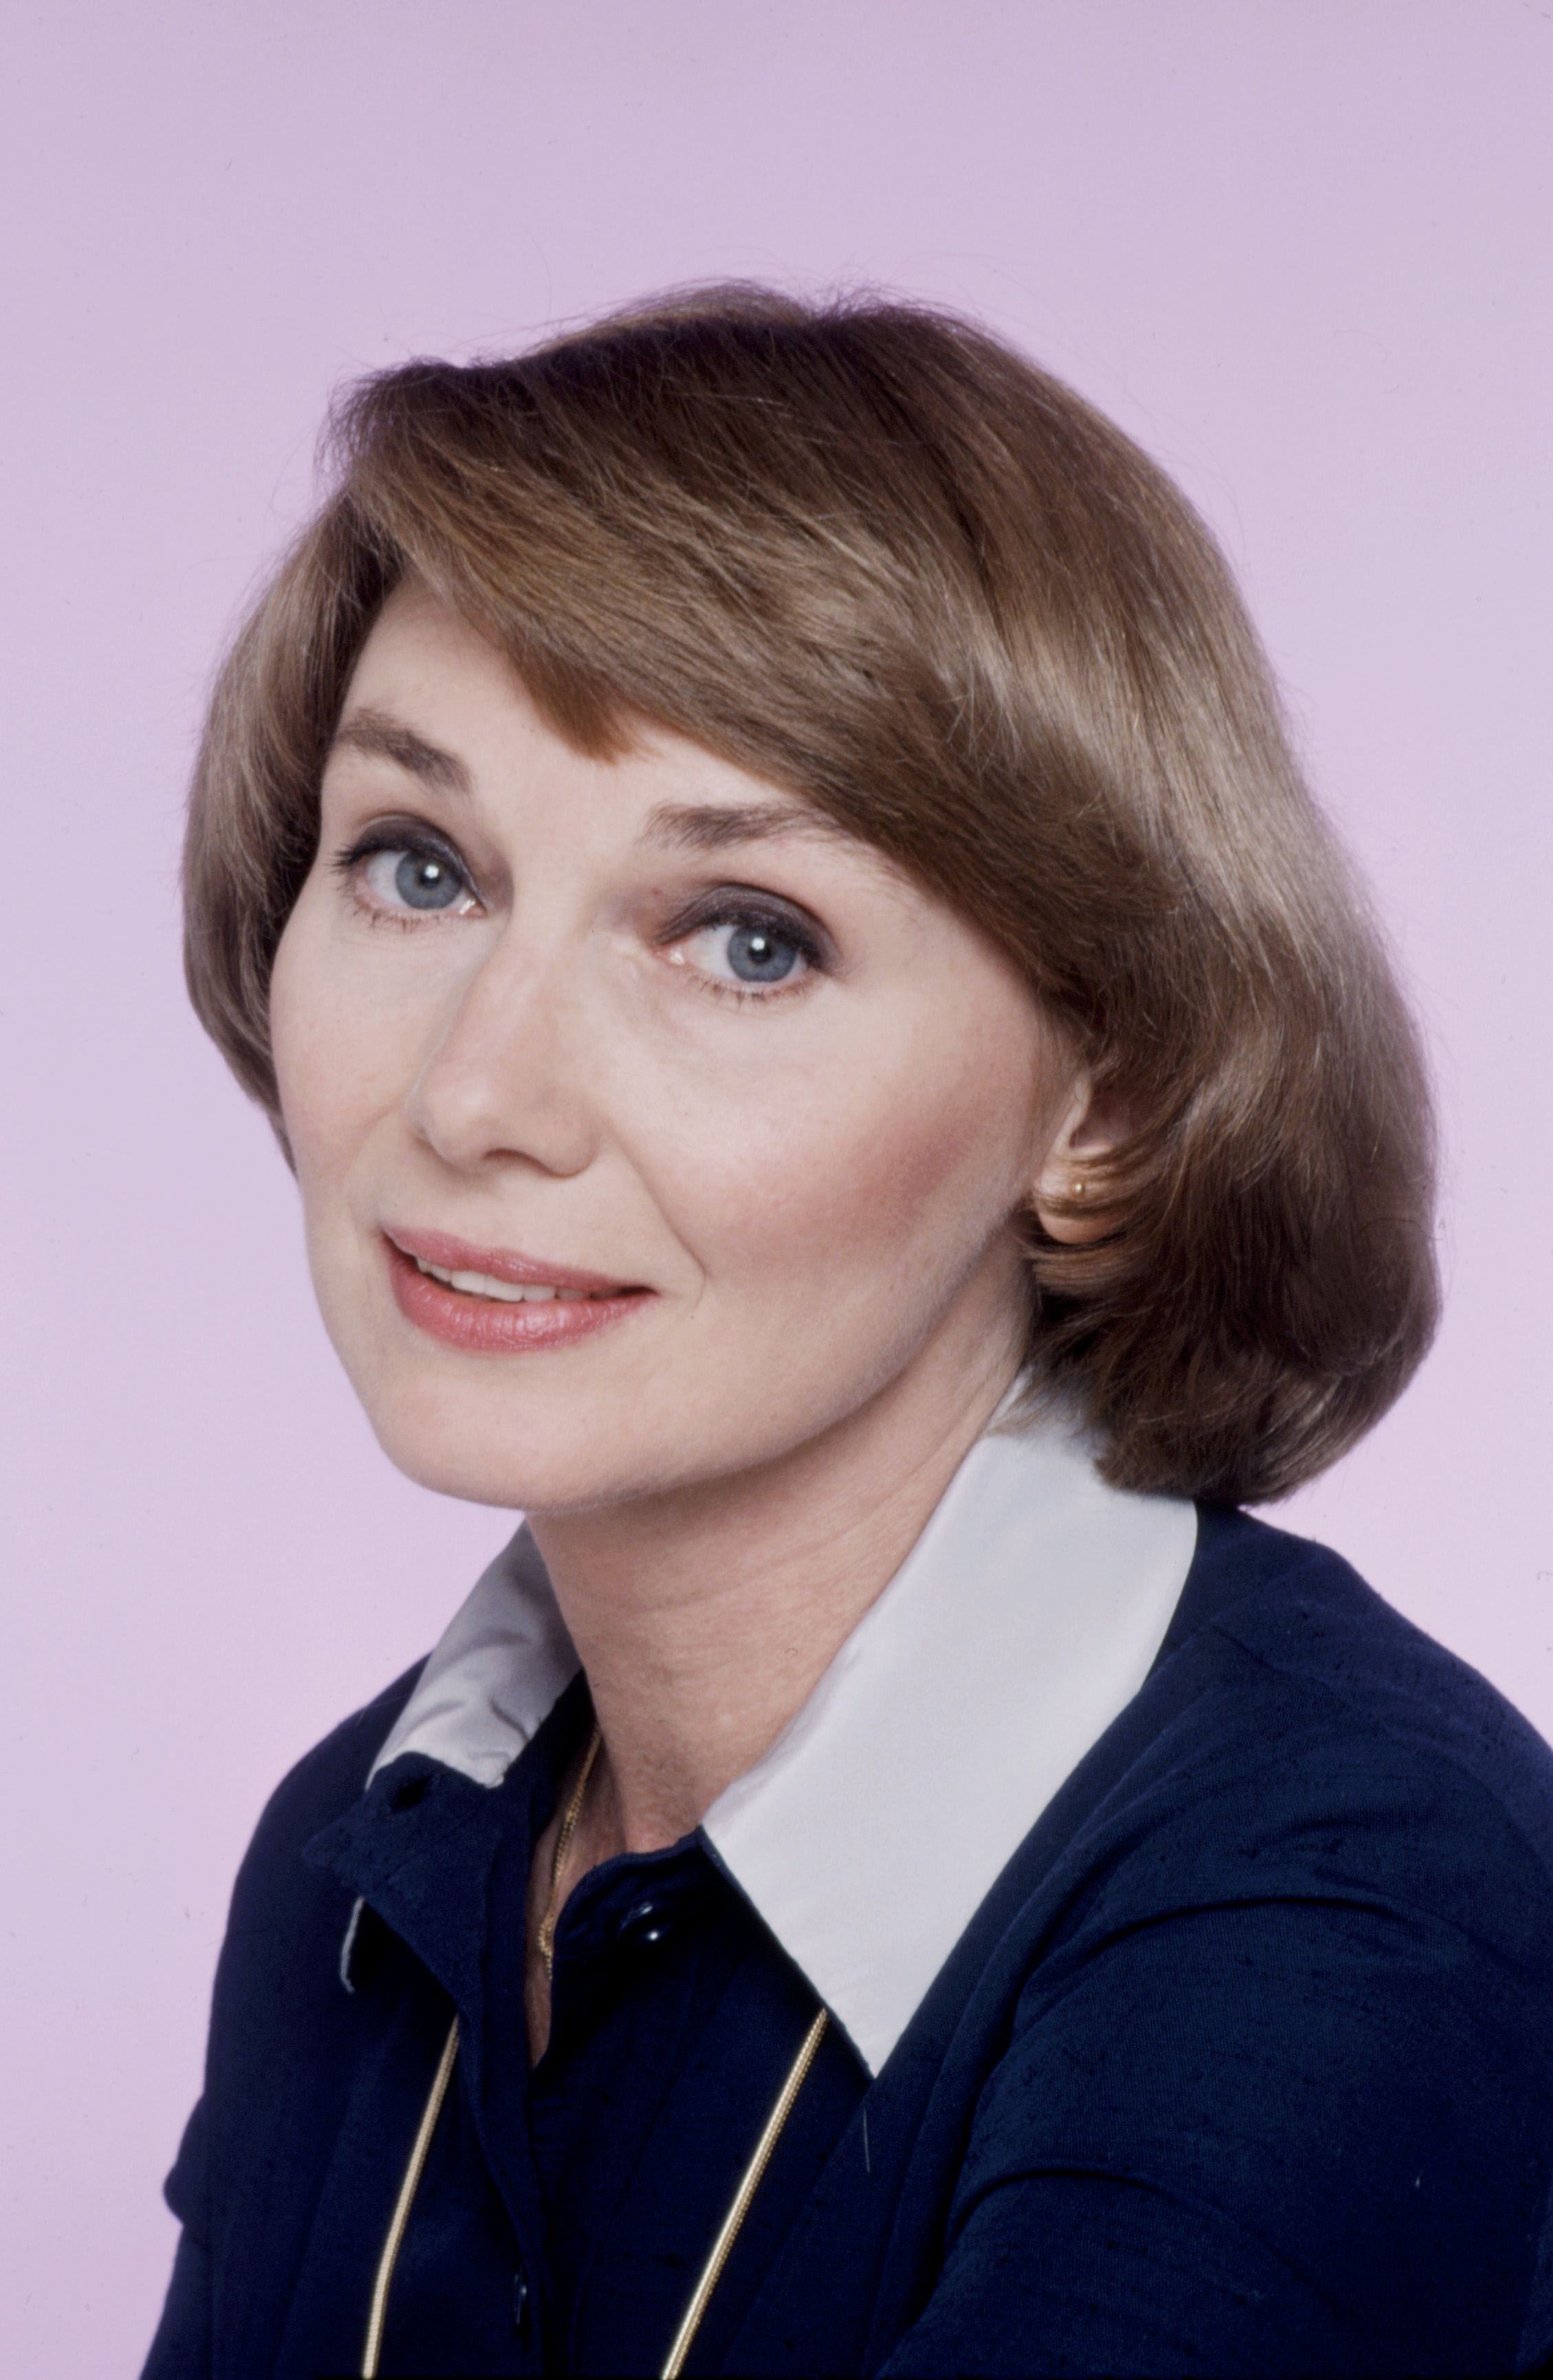 Inga Swenson sur une photo promotionnelle pour la série télévisée "Benson" le 1er janvier 1980 à Los Angeles, Californie. | Source : Getty Images